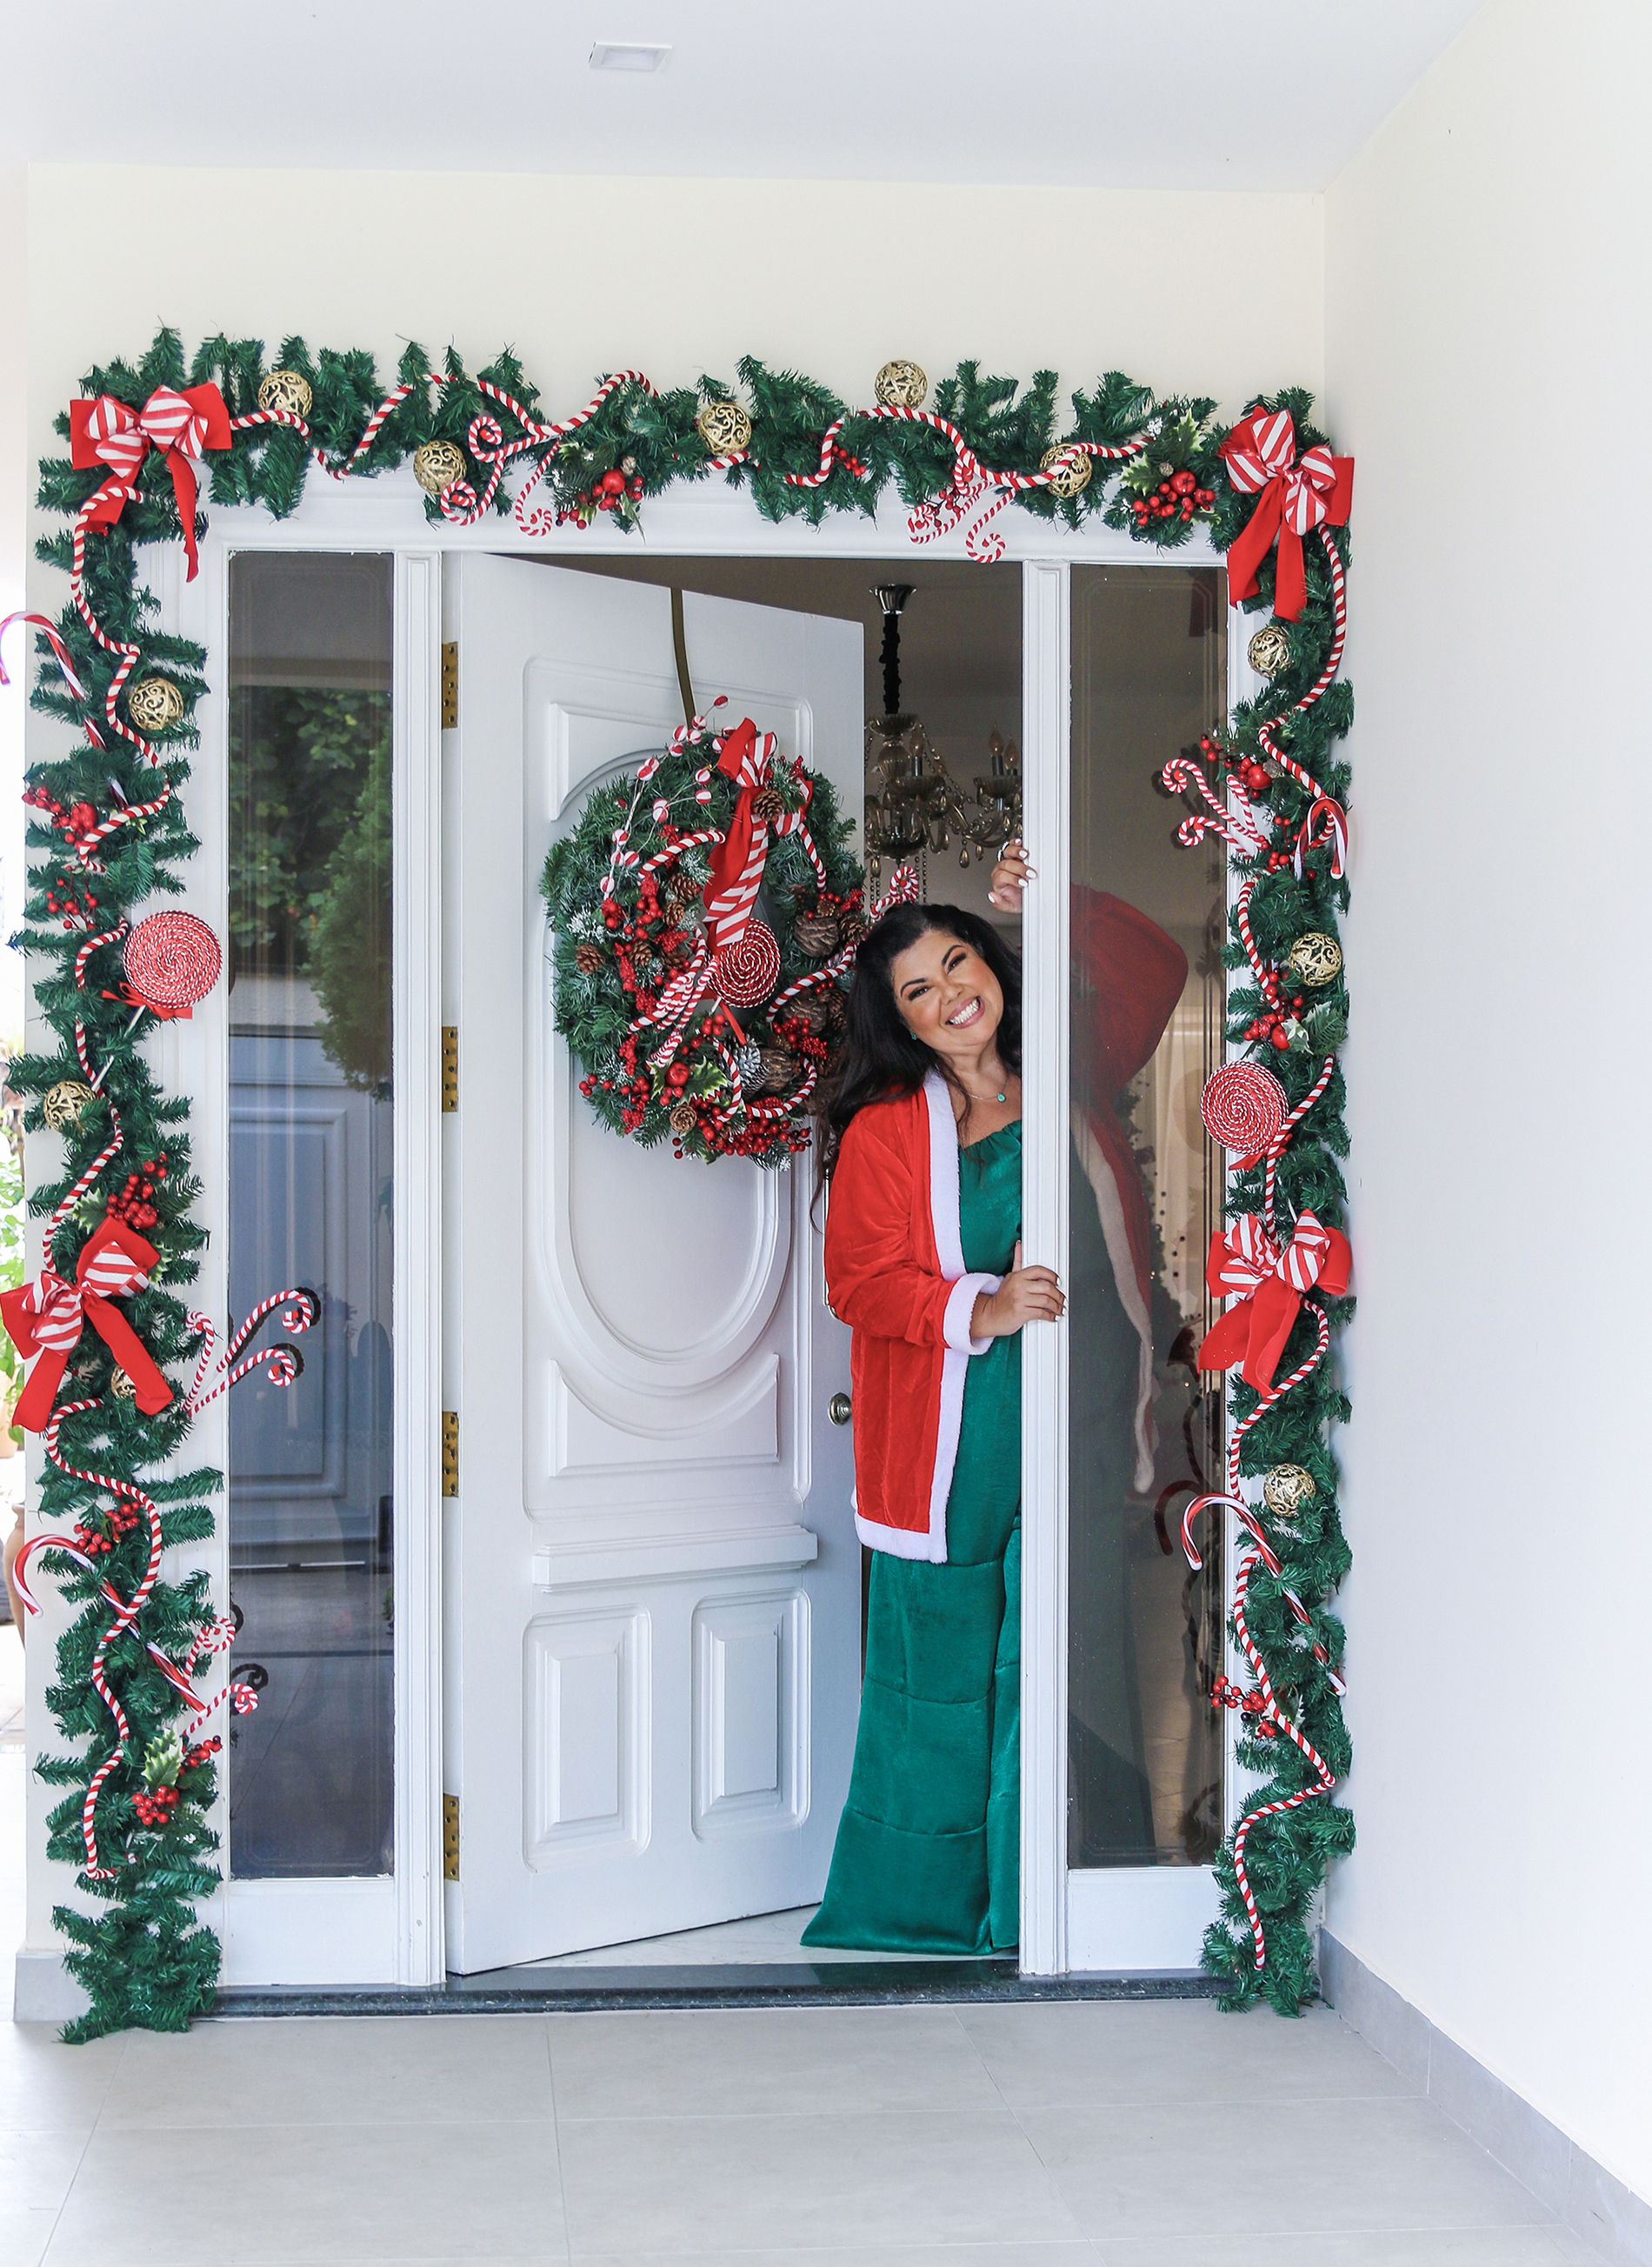 Fabiana Karla mostra a decoração de Natal de sua casa